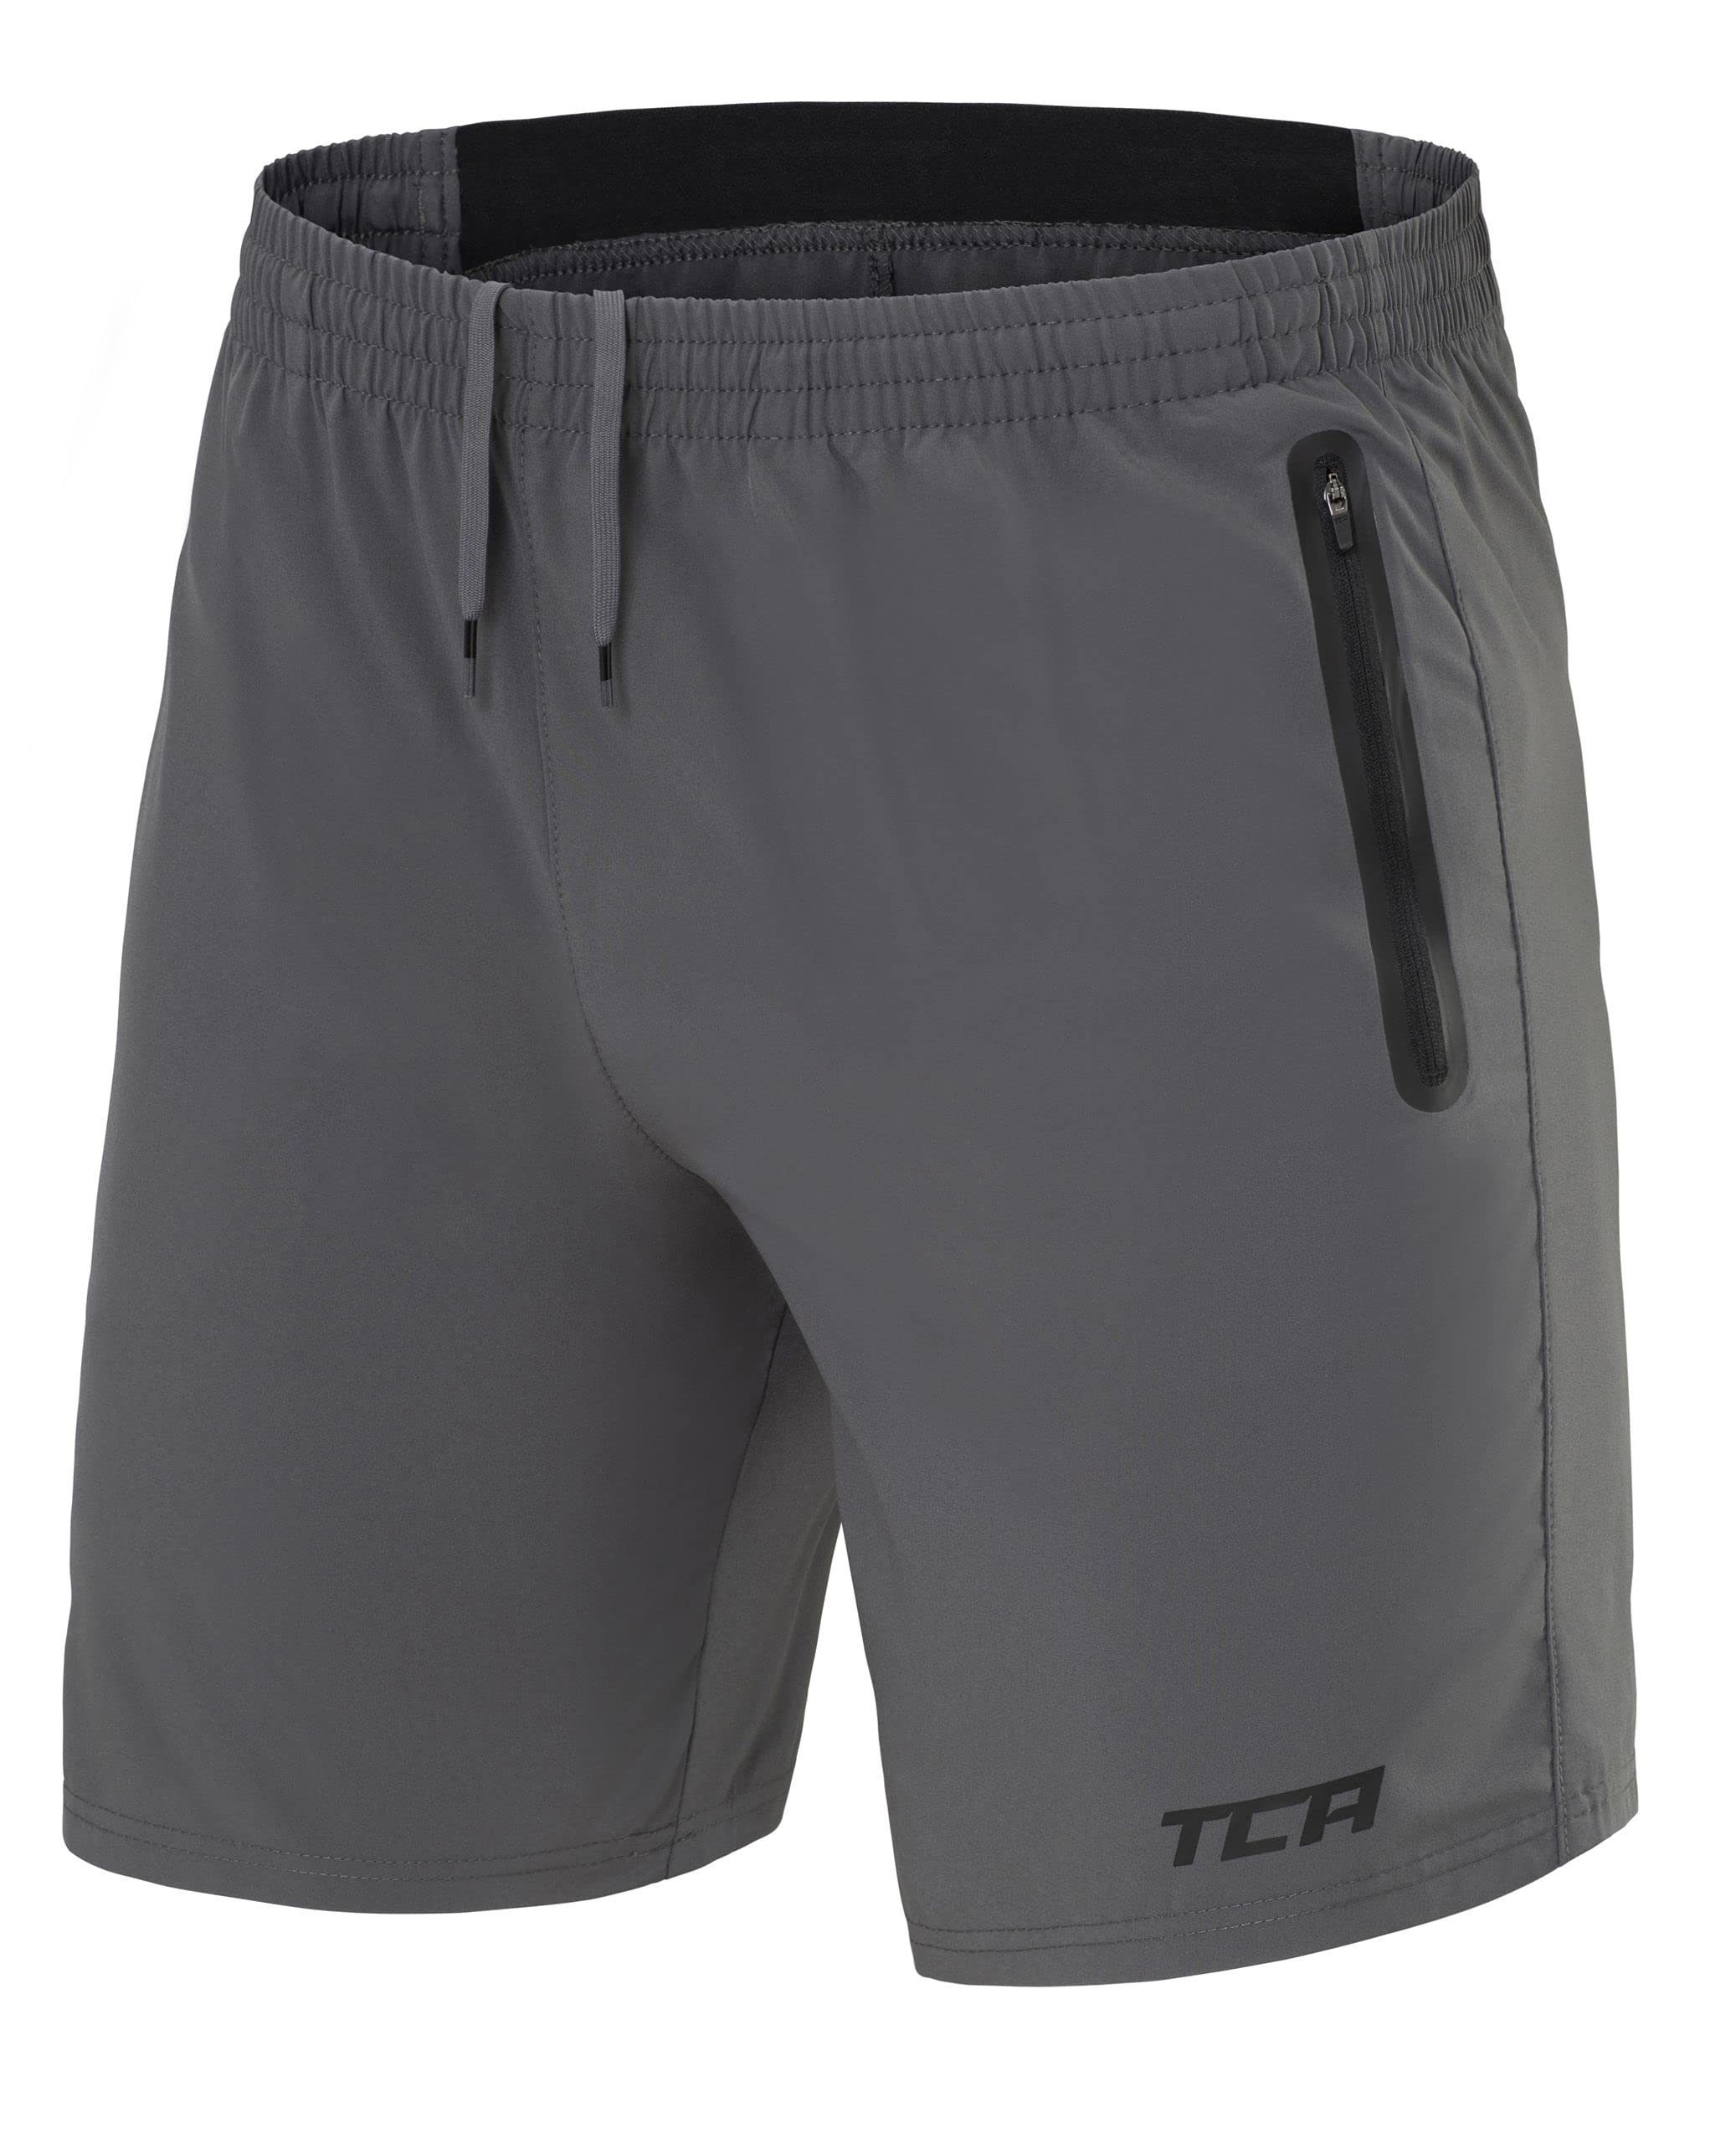 Herren TCA TCA Tech Reißverschlusstaschen - Trainingsshorts Grau Laufhose mit Elite